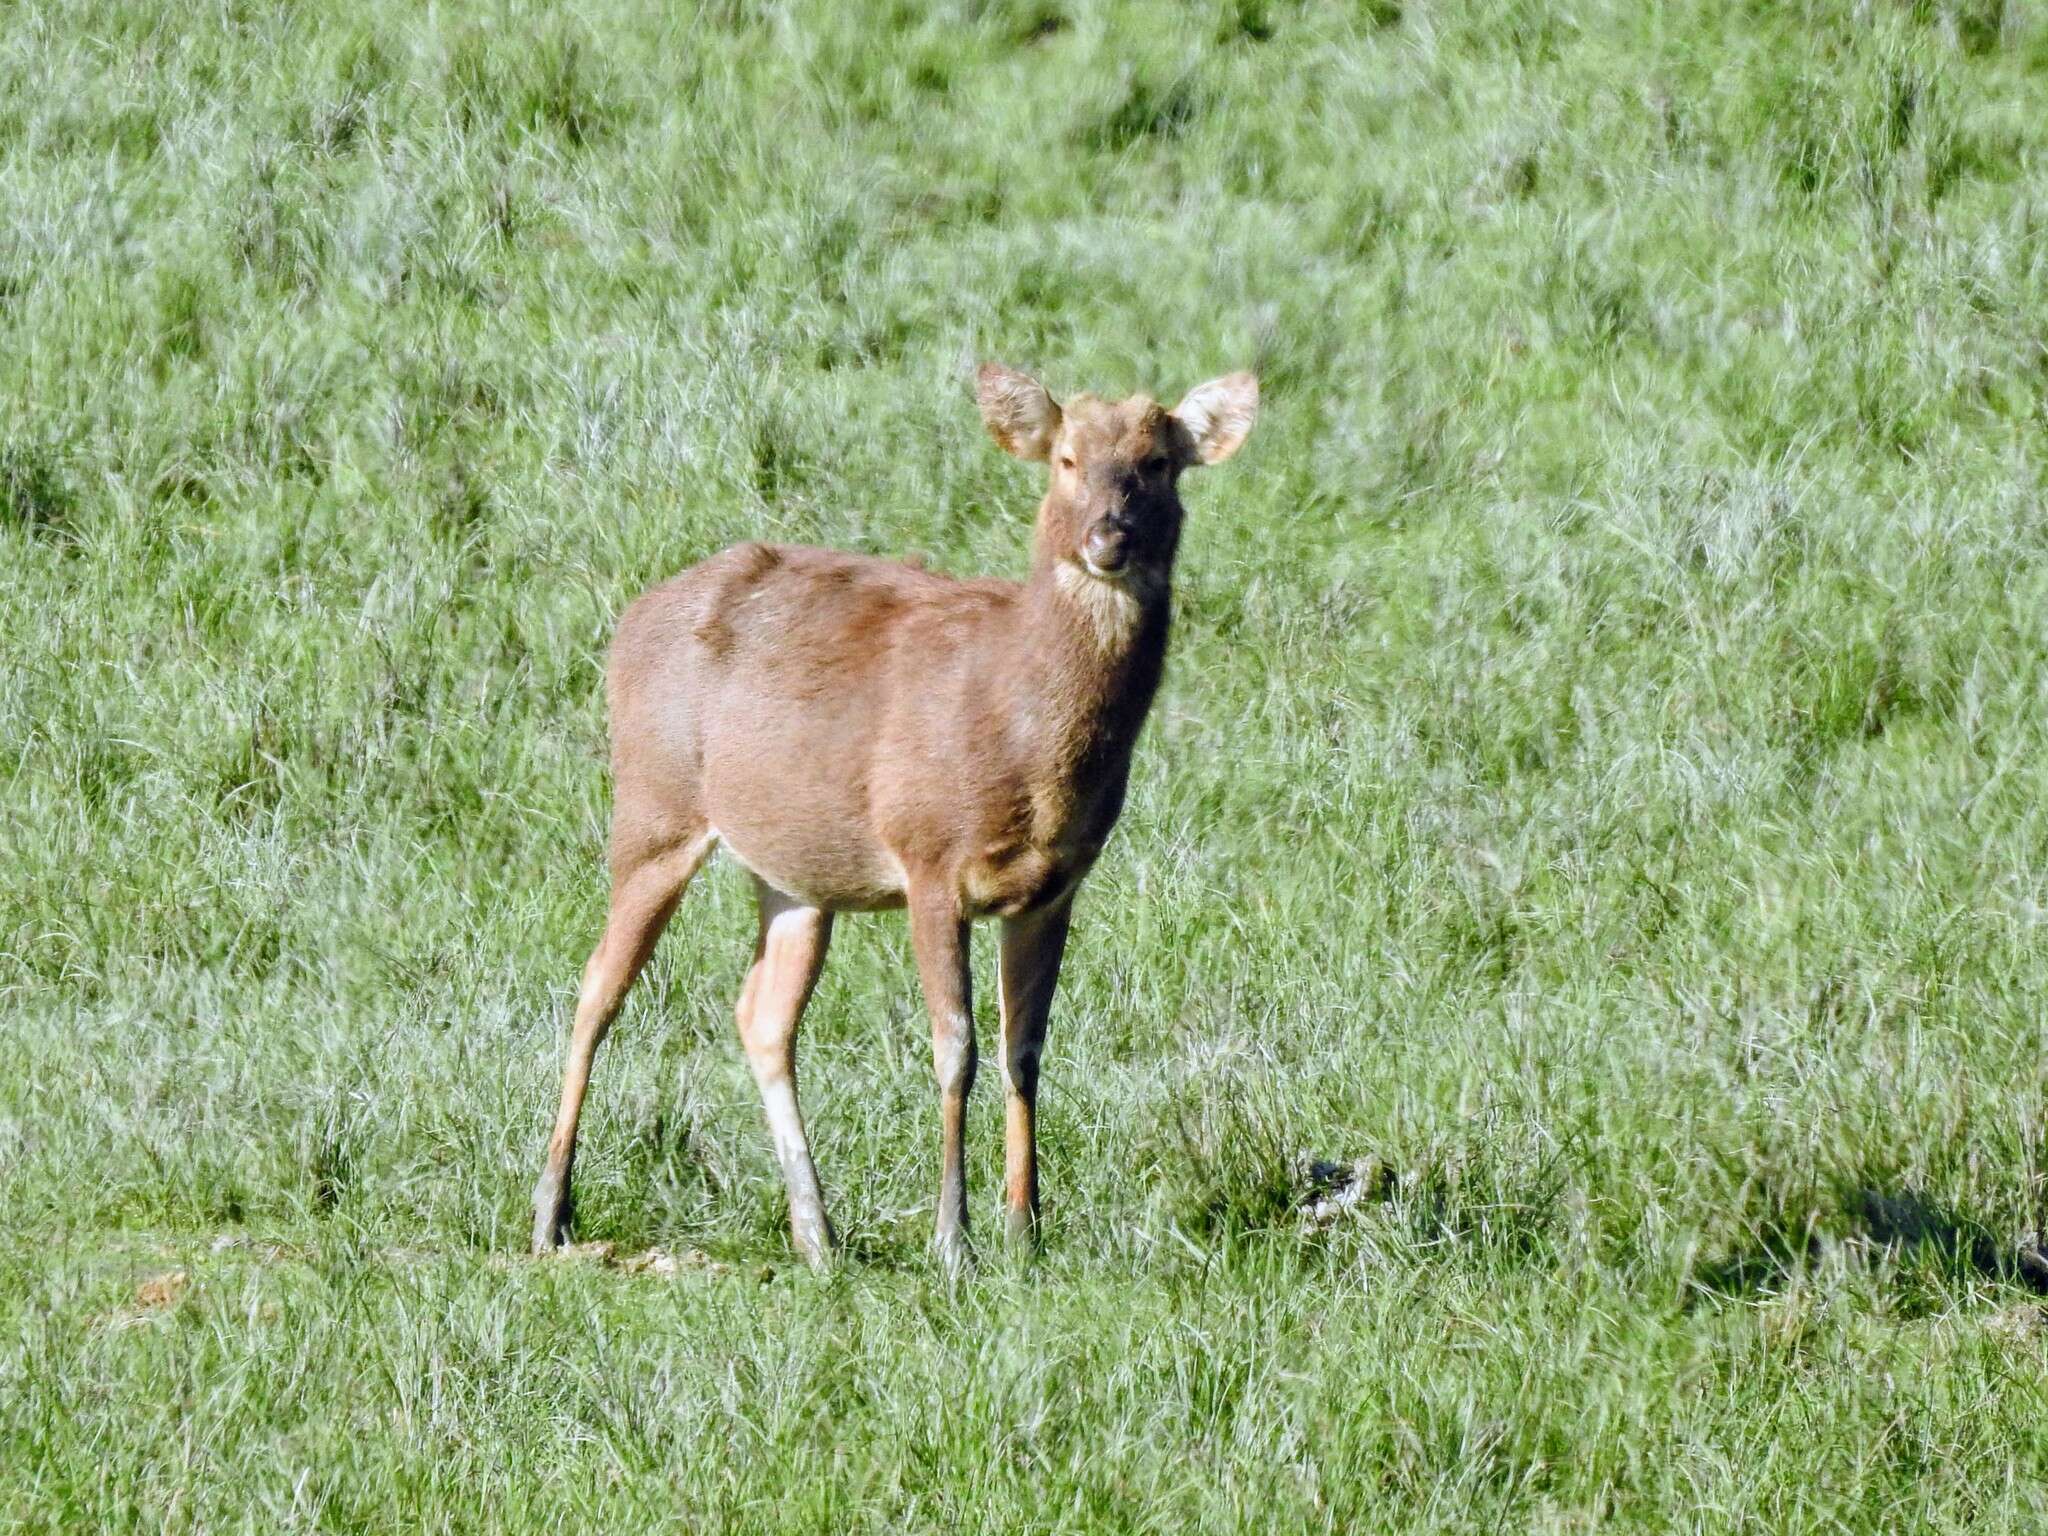 Image of Swamp Deer